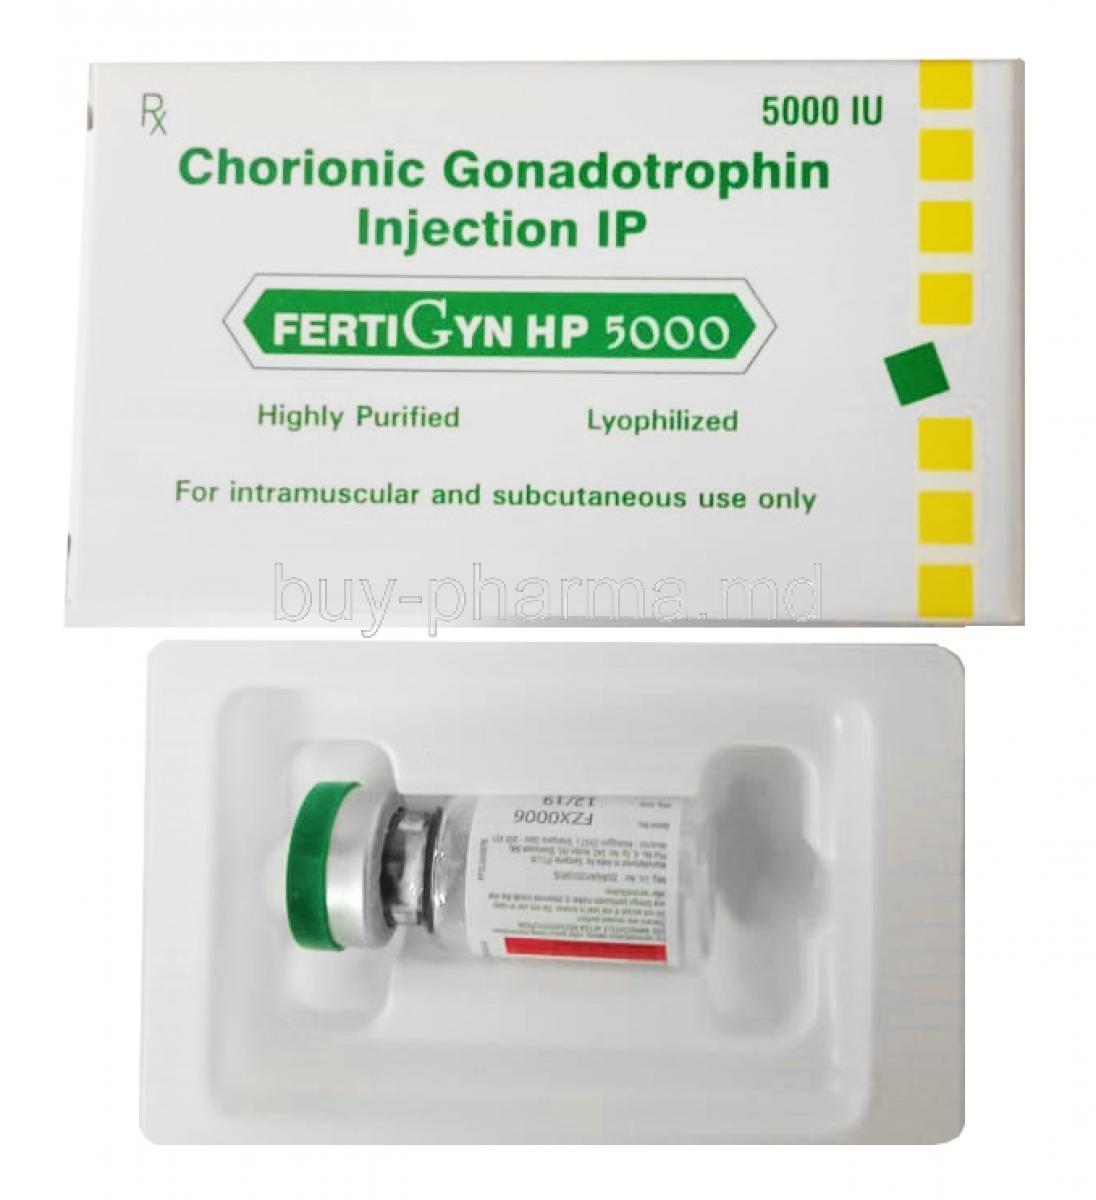 Fertigyn HP 5000 Injection, Human chorionic gonadotropin 5000IU box and vial